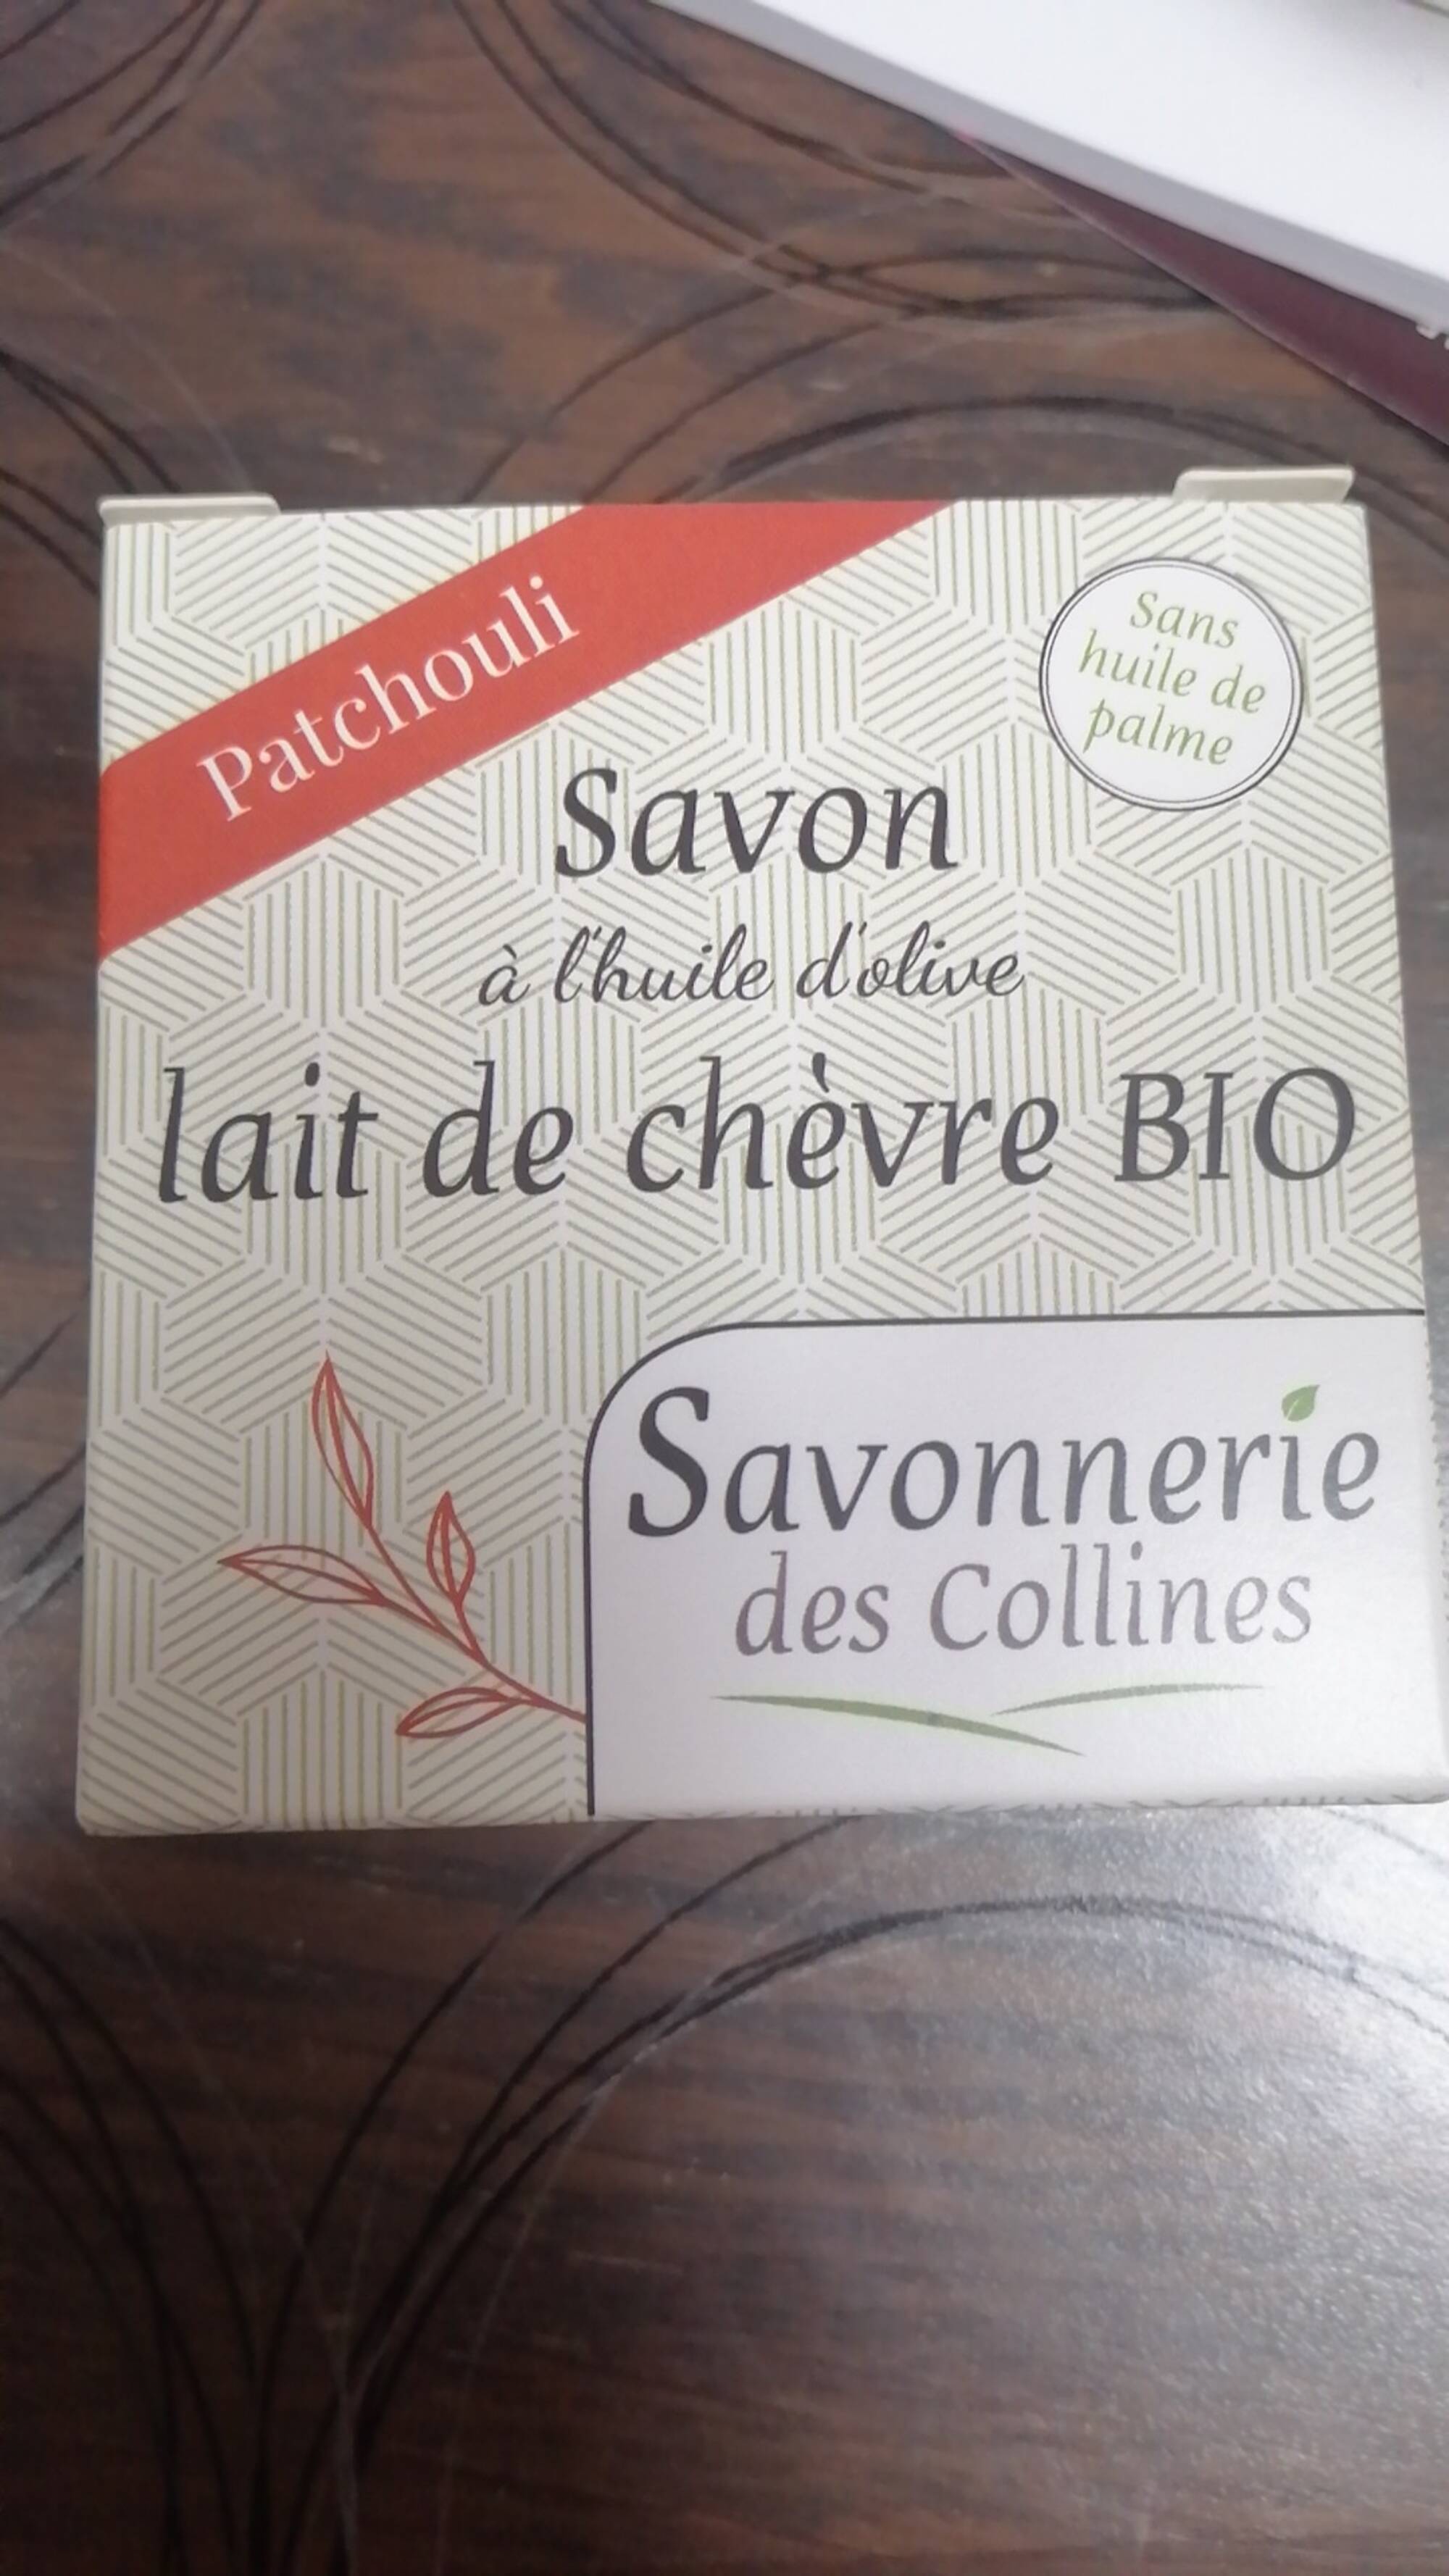 SAVONNERIE DES COLLINES - Patchouli - Savon lait de chèvre bio